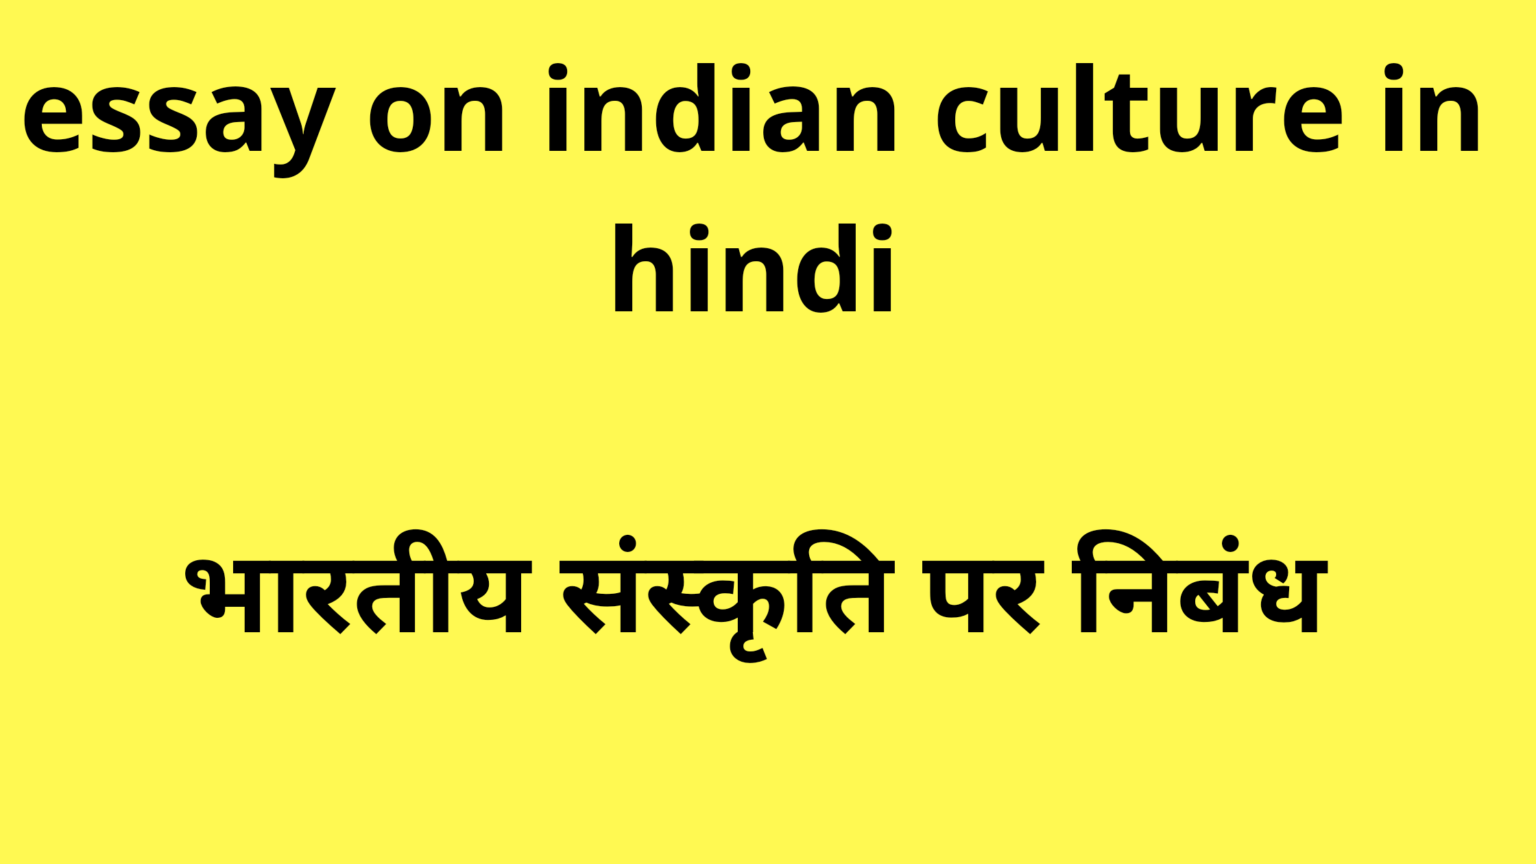 culture essay in hindi